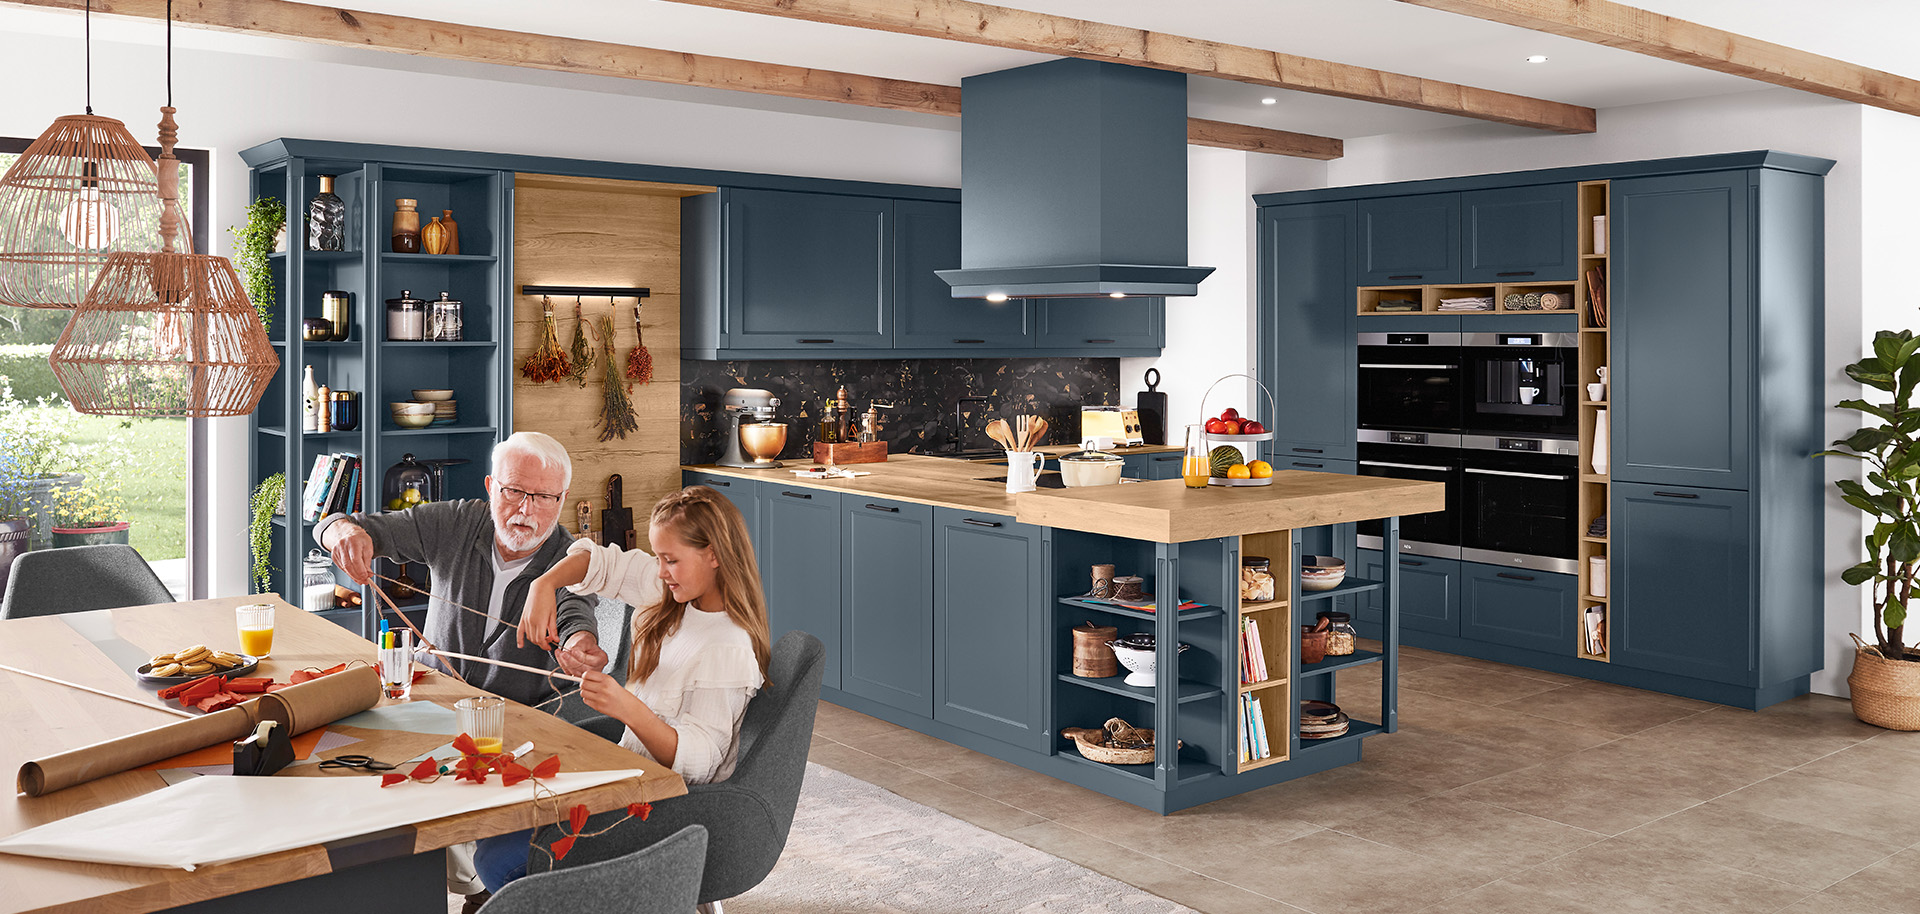 Een ruime, moderne keuken met marineblauwe kasten, roestvrijstalen apparaten en een oudere persoon die met een kind aan een zonovergoten houten tafel knutselt.